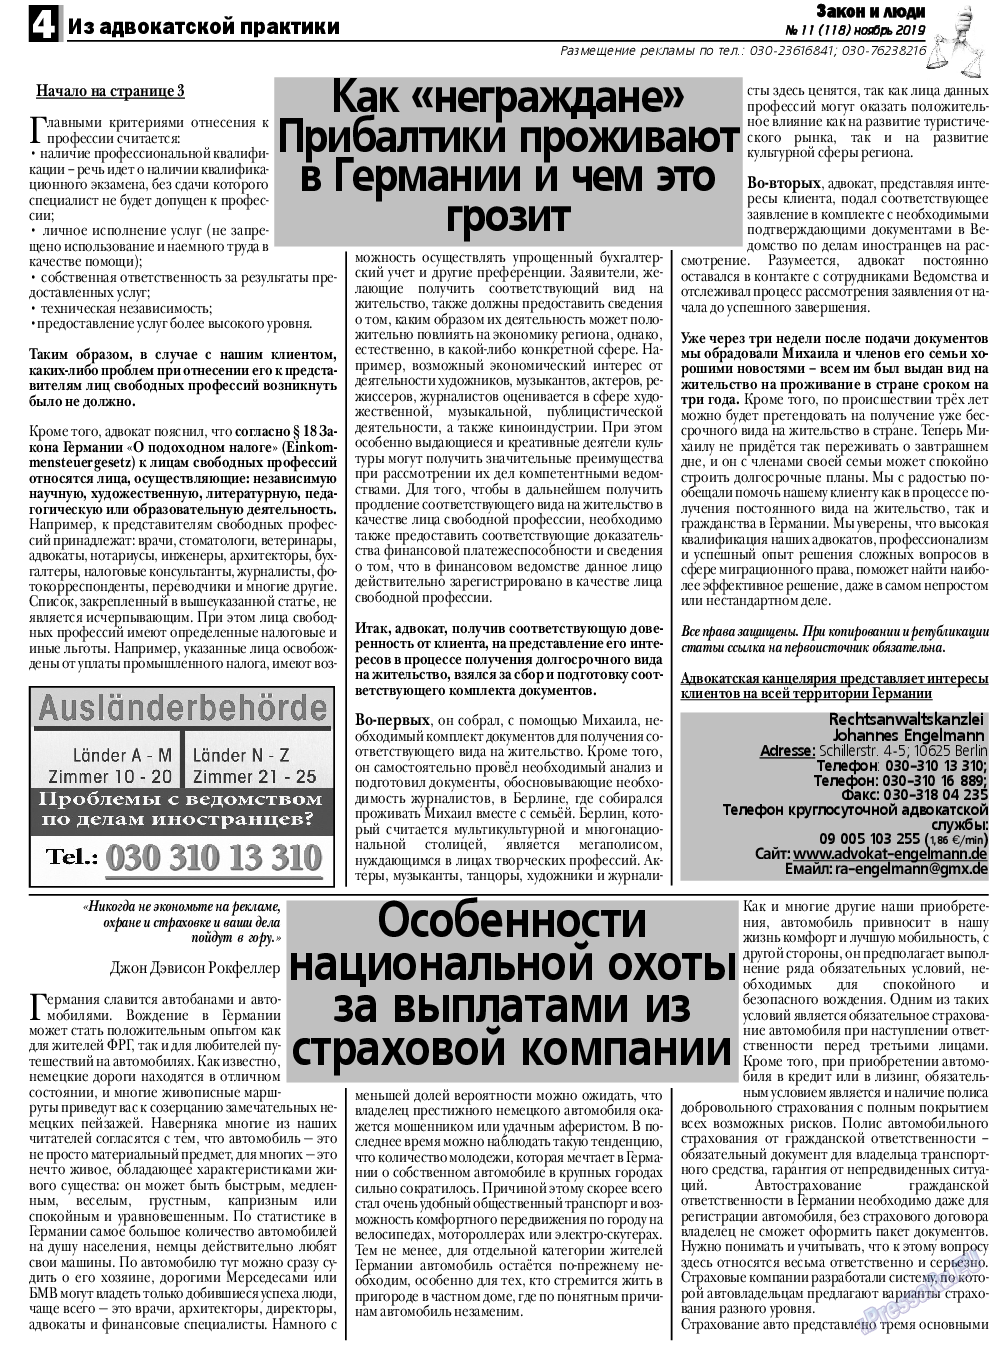 Закон и люди, газета. 2019 №11 стр.4